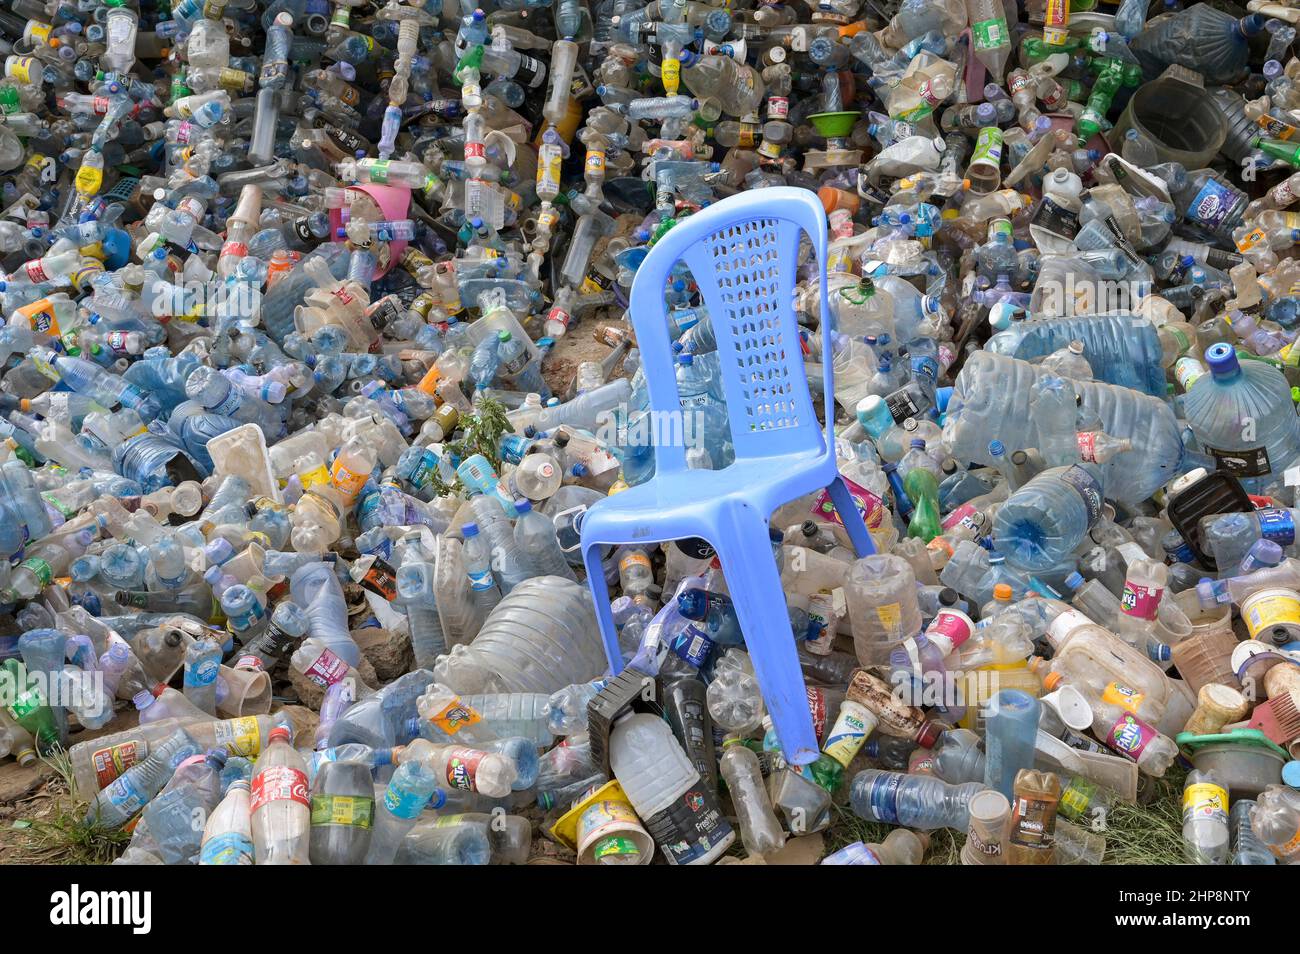 KENIA, Nairobi, Kibera Slum, Plastikflaschen von Nestle, Pepsico, Coca Cola and Co., Dumping, Getränkehersteller ersetzen Mehrwegglasflaschen mehr und mehr durch Einwegglasflaschen, aufgrund fehlender Recyclingsysteme wachsen und wachsen die Abfallberge, in der Mitte ein Plastikstuhl Monobloc / KENIA, Nairobi, Kibera Slum, Plastikflaschen von Coca Cola und Co, Coca Cola reduziert in Afrika die Glaspfandflaschen zunehmend und steigt dafür mehr auf den Verkauf von Einwegflaschen aus Plastik um, die Müllberge wachsen, Recycling Systeme fehlen, dazwischen ein Plastikstuhl Monobloc Stockfoto